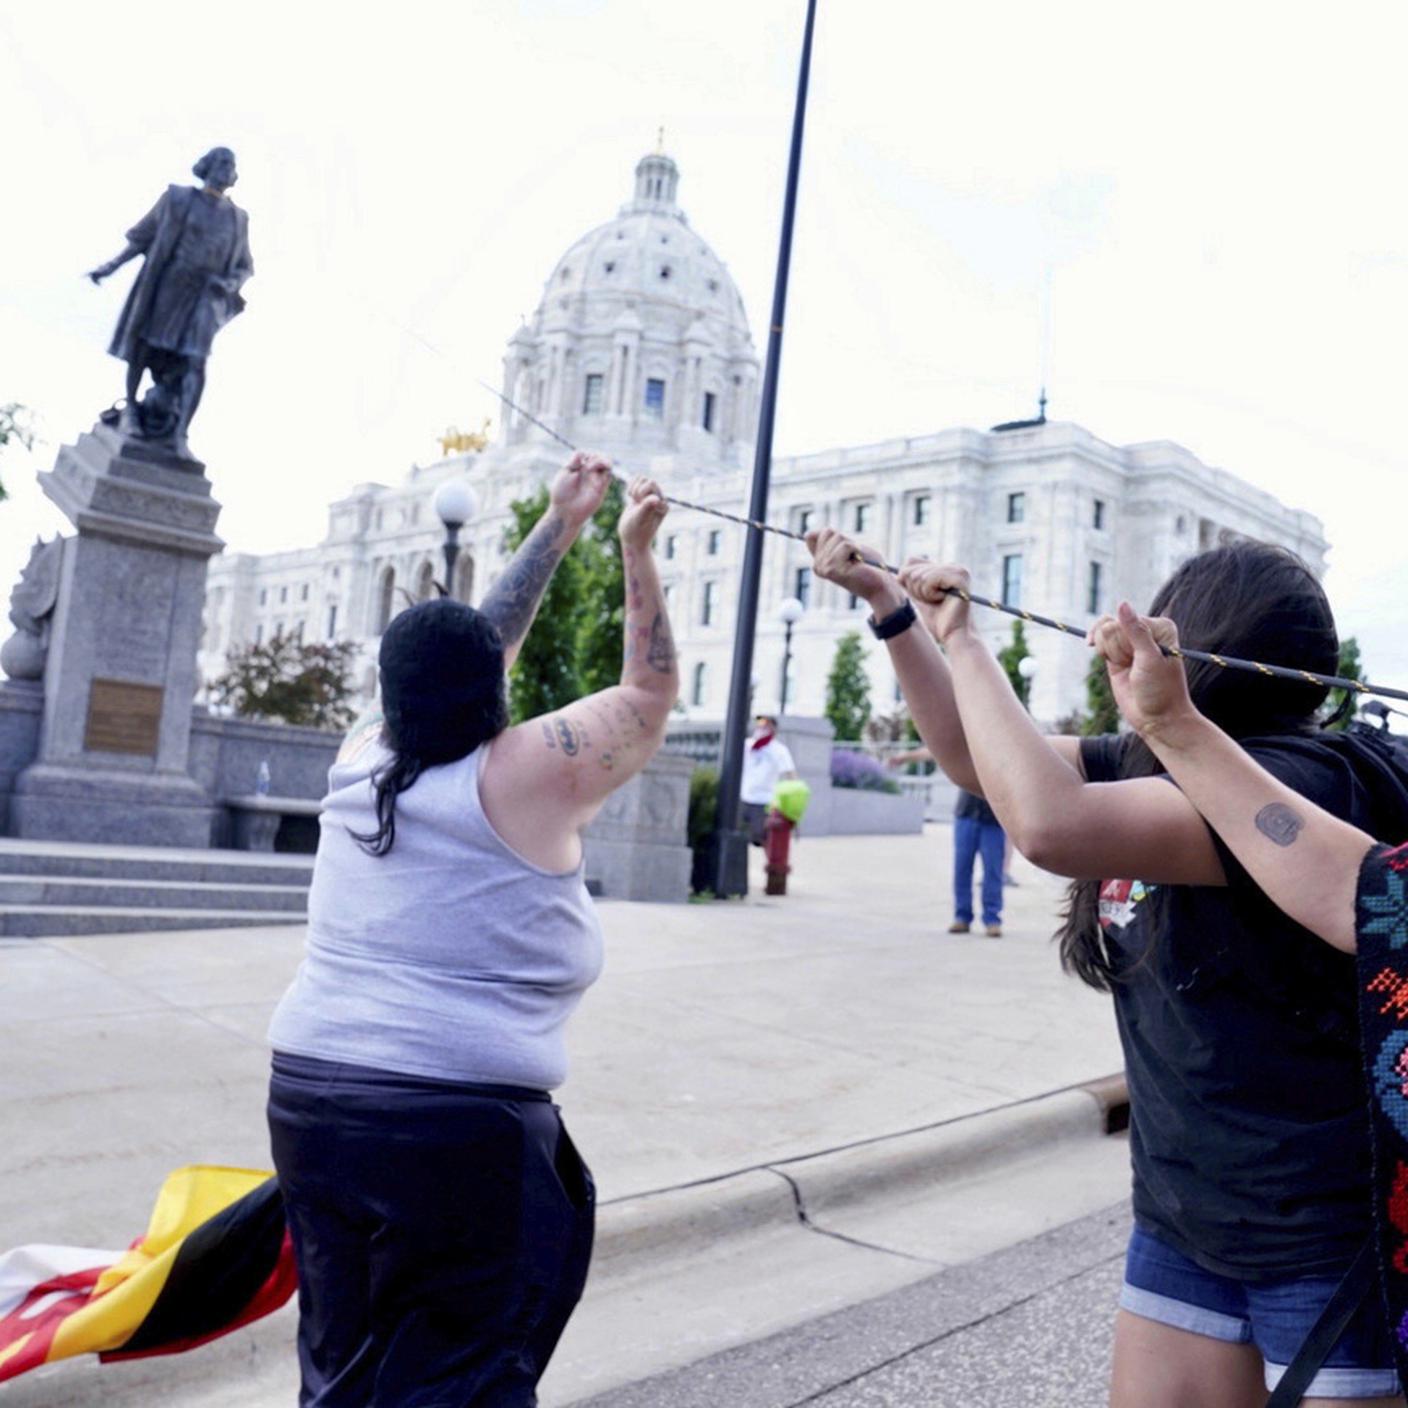 Proteste in America. Attivisti abbattono la statua di Cristoforo Colombo (Minneapolis, 10.06.2020)